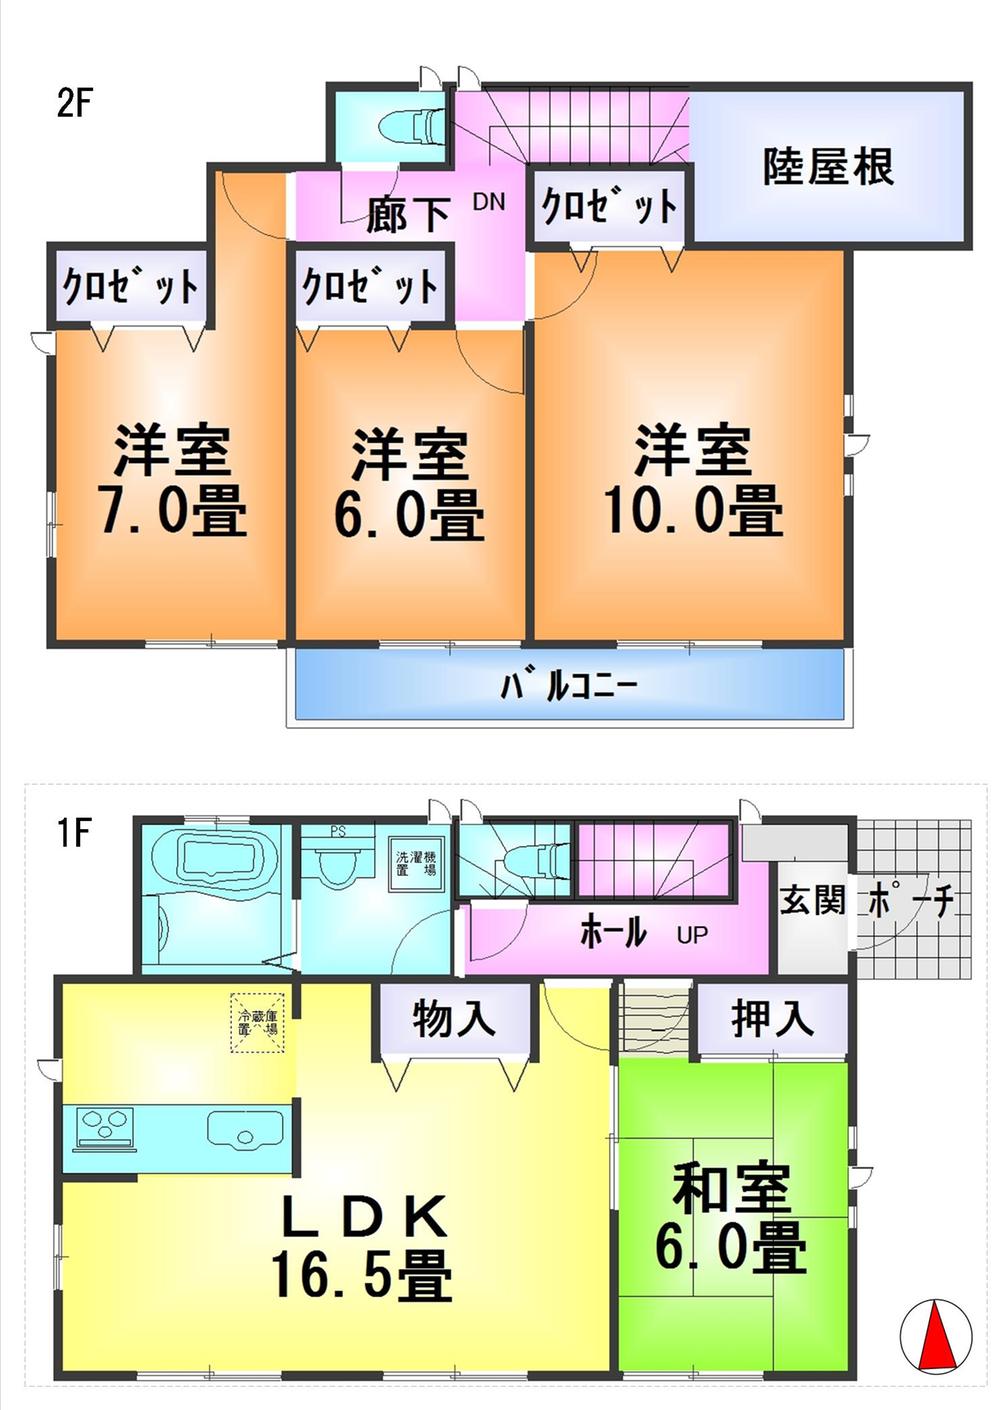 Floor plan. 38,800,000 yen, 4LDK, Land area 150.46 sq m , Building area 106.41 sq m floor plan